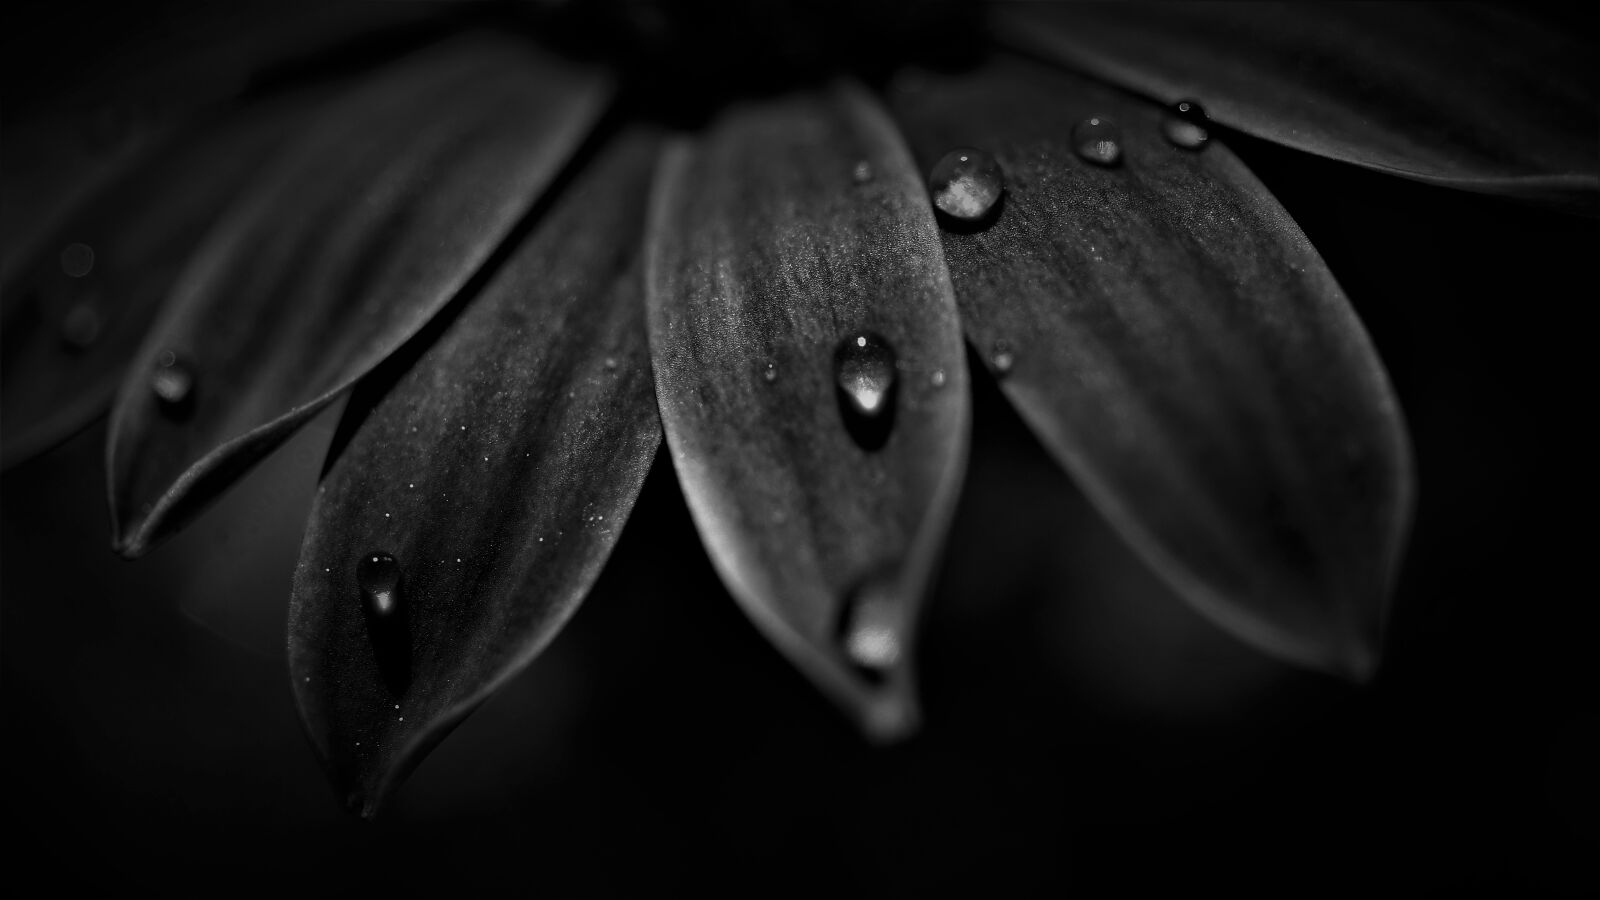 Sony a6000 + Sony E 30mm F3.5 Macro sample photo. Petals, black white, dark photography